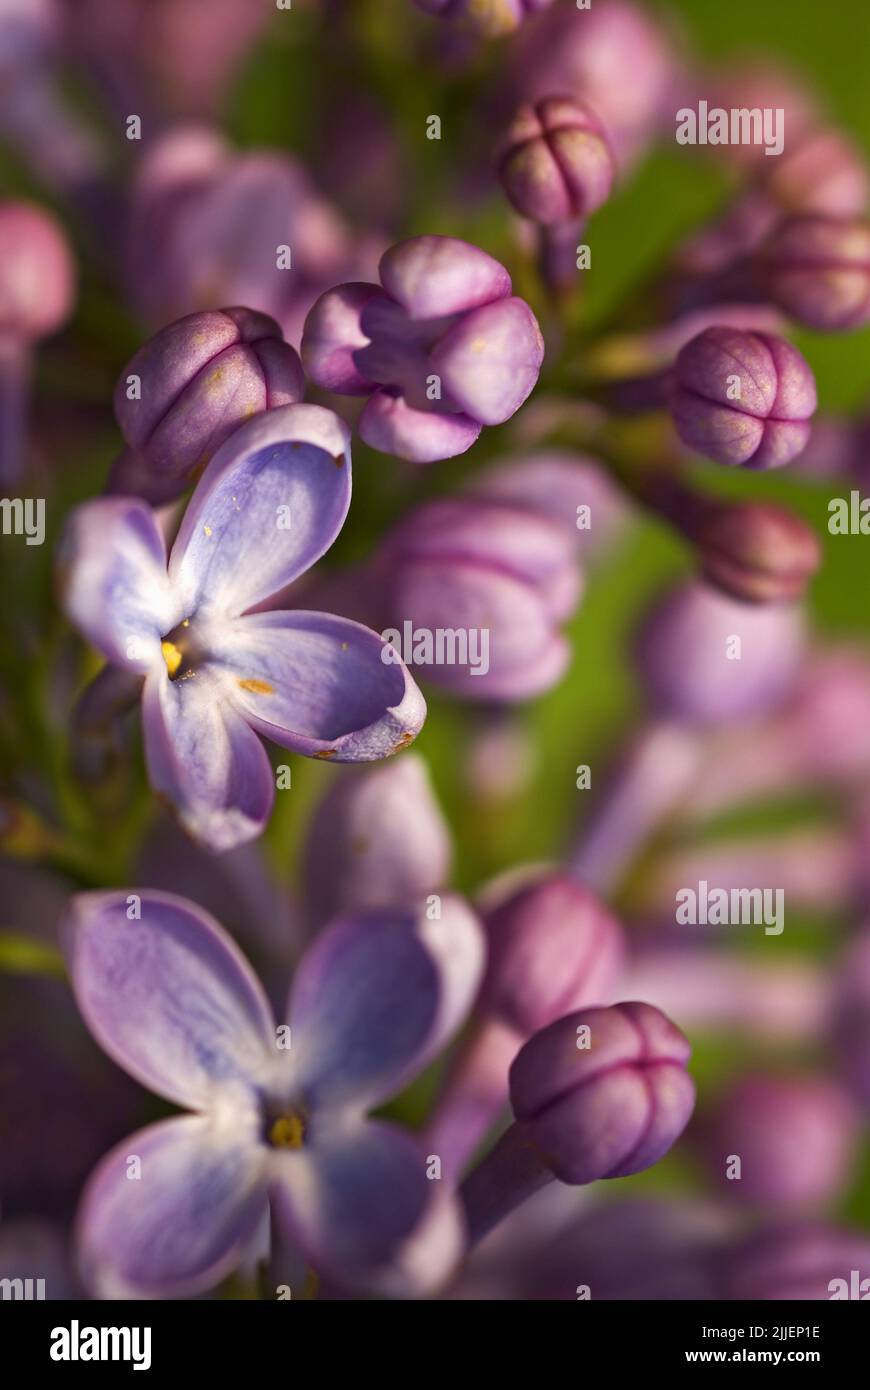 common lilac (Syringa vulgaris), flowers, close up Stock Photo